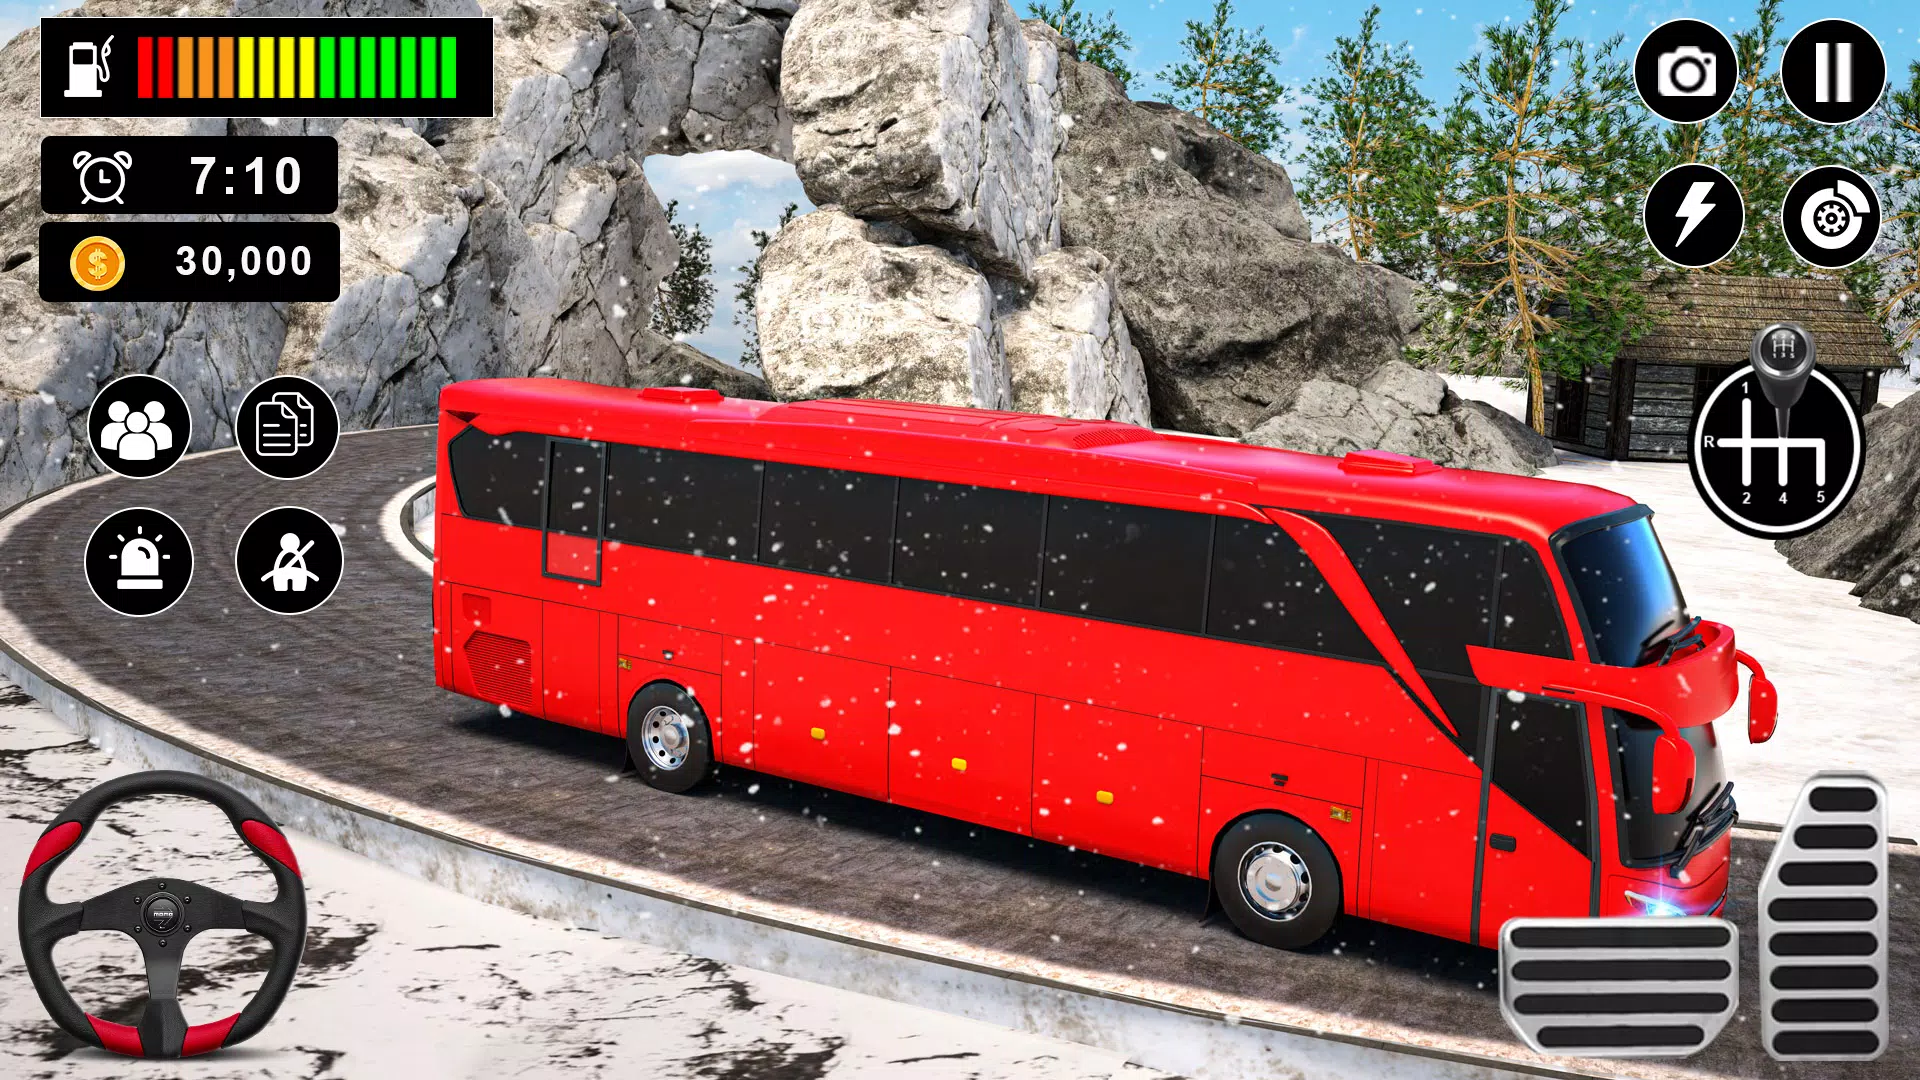 Faça download do Jogos De Motorista De ônibus APK v1.3.5 para Android